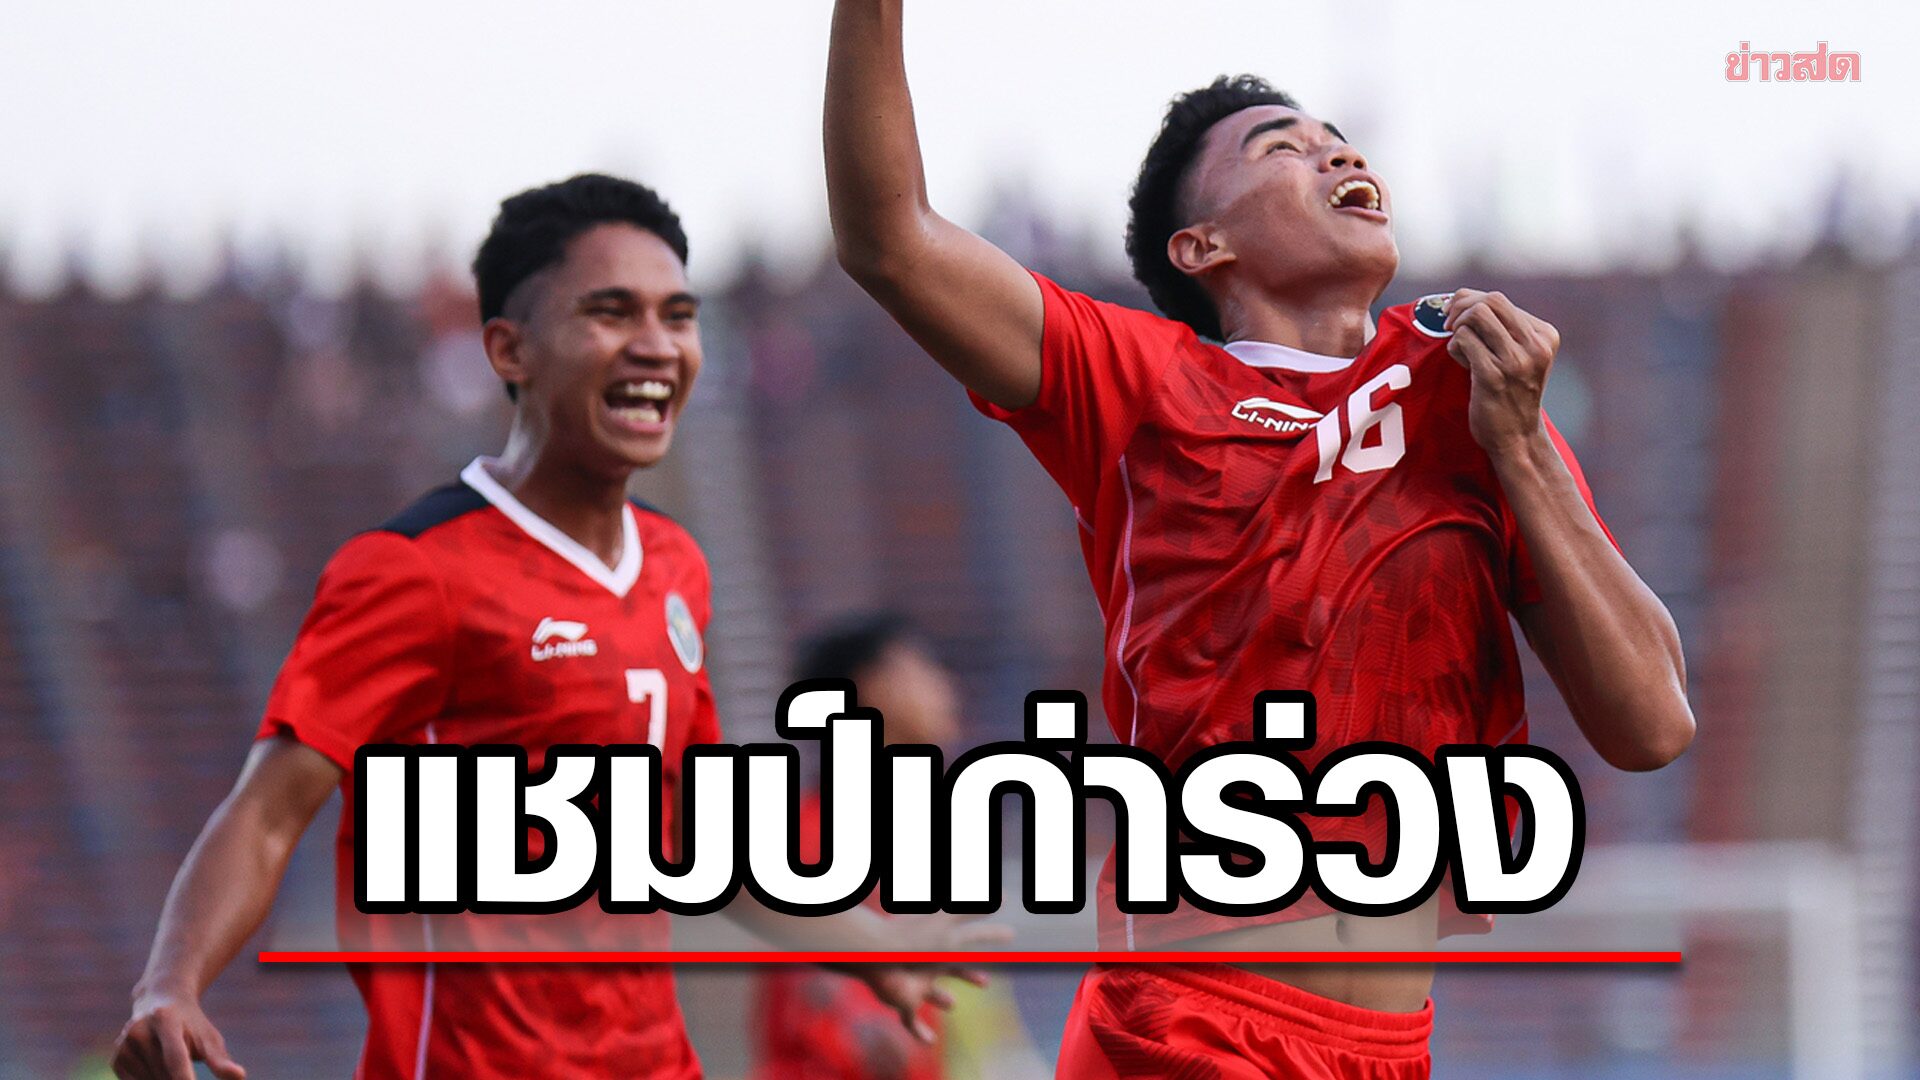 แชมป์เก่าร่วง อินโดนีเซีย ซัดชัยทดเจ็บเขี่ย เวียดนาม ตกรอบตัดเชือกฟุตบอลซีเกมส์